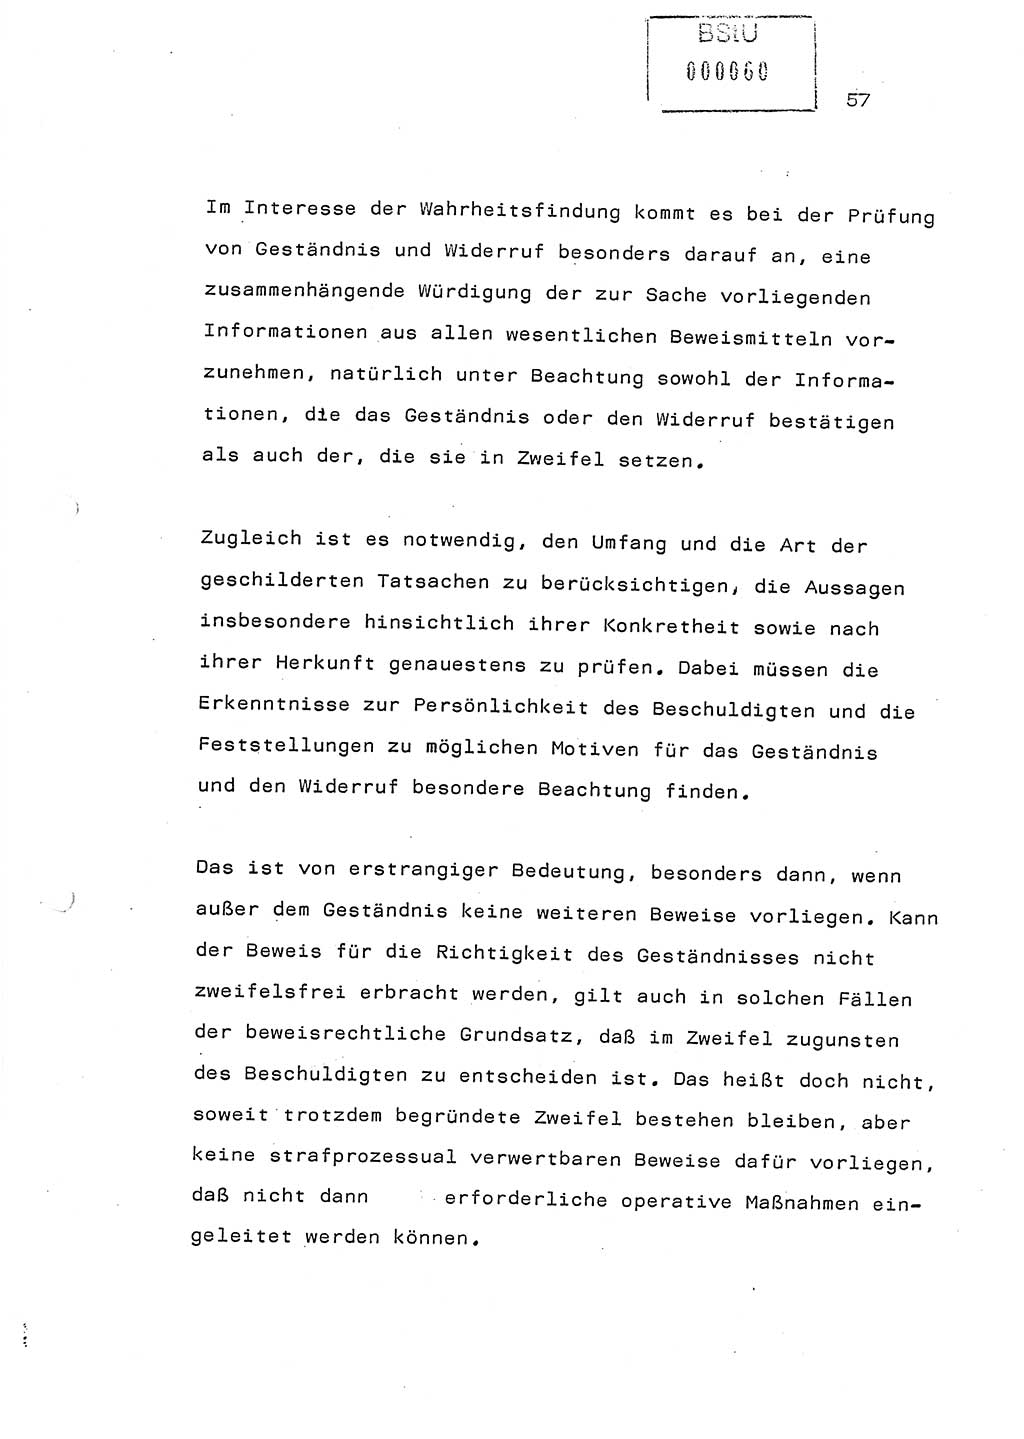 Referat (Generaloberst Erich Mielke) auf der Zentralen Dienstkonferenz am 24.5.1979 [Ministerium für Staatssicherheit (MfS), Deutsche Demokratische Republik (DDR), Der Minister], Berlin 1979, Seite 57 (Ref. DK DDR MfS Min. /79 1979, S. 57)